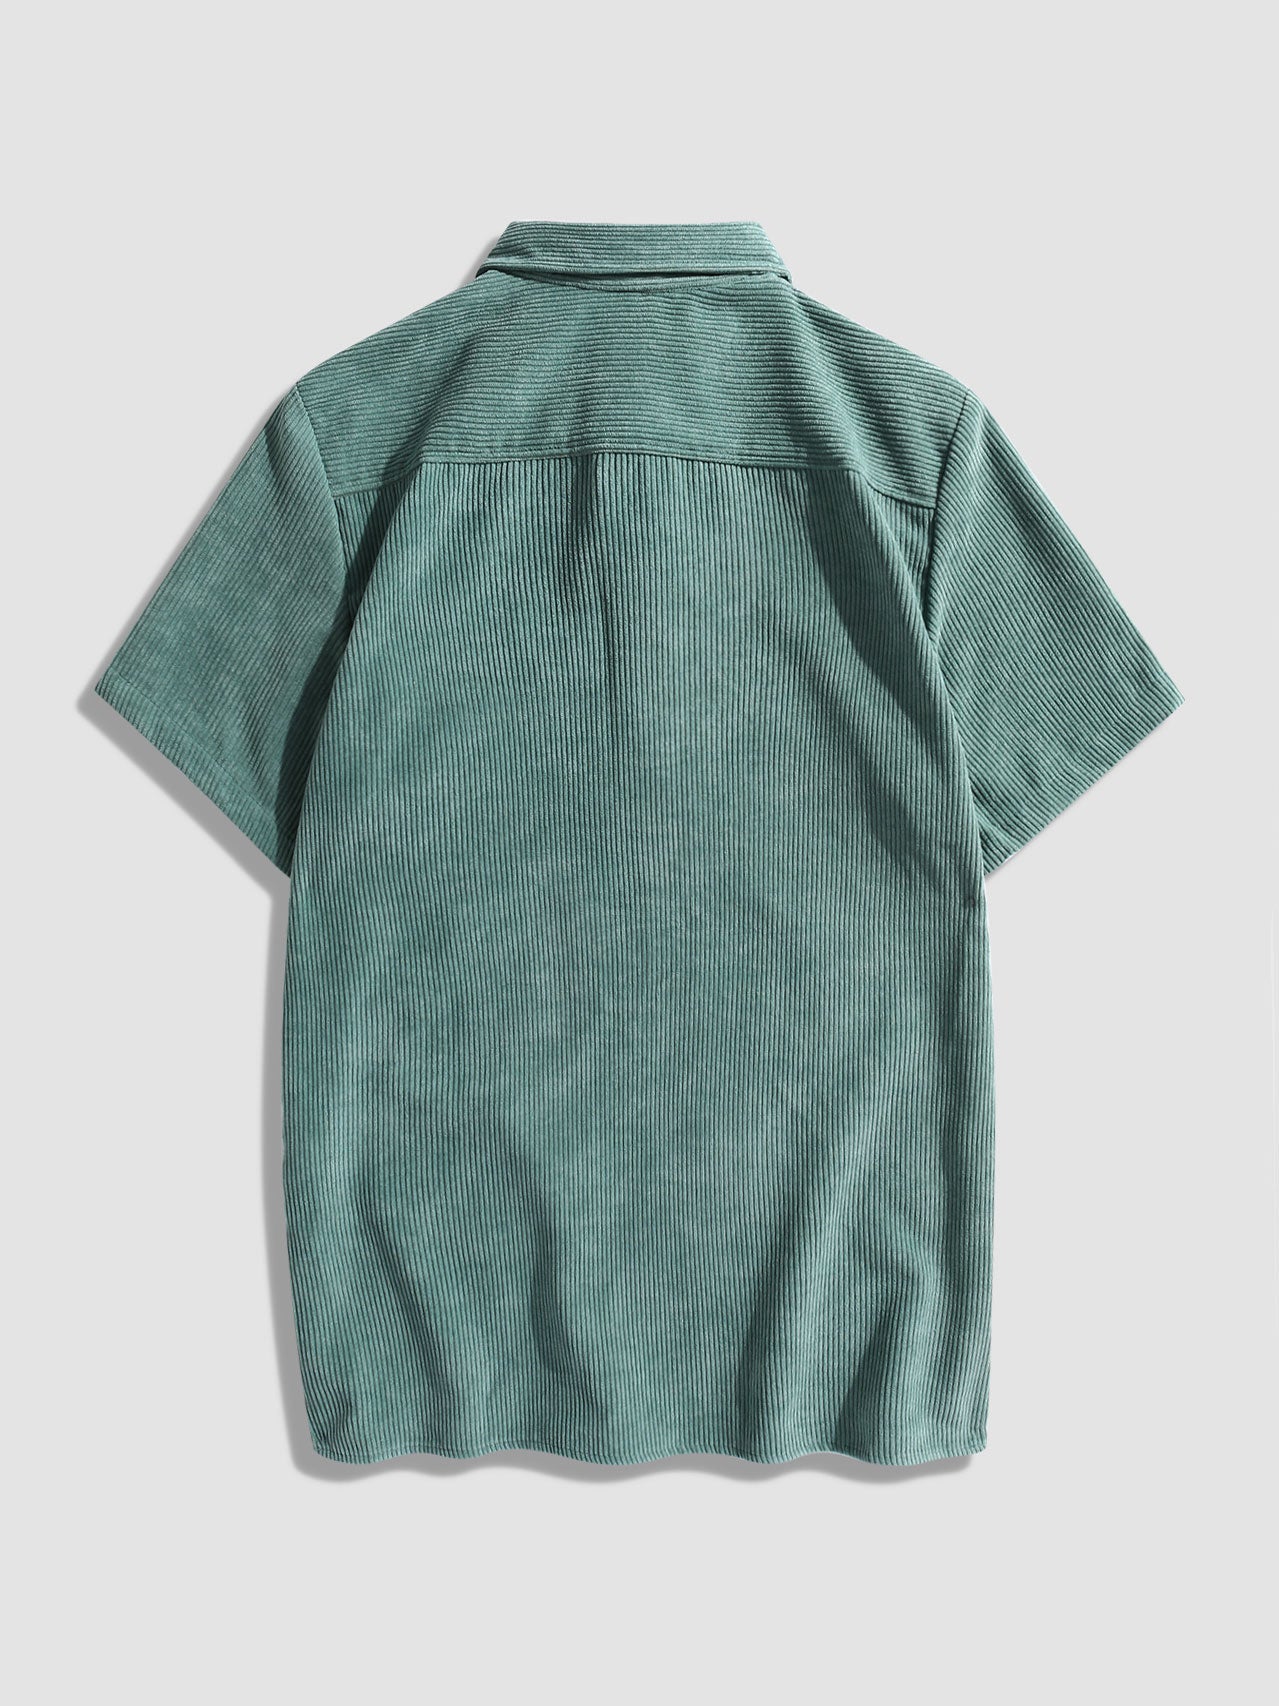 Corduroy Solid Short Sleeve Basic Shirts